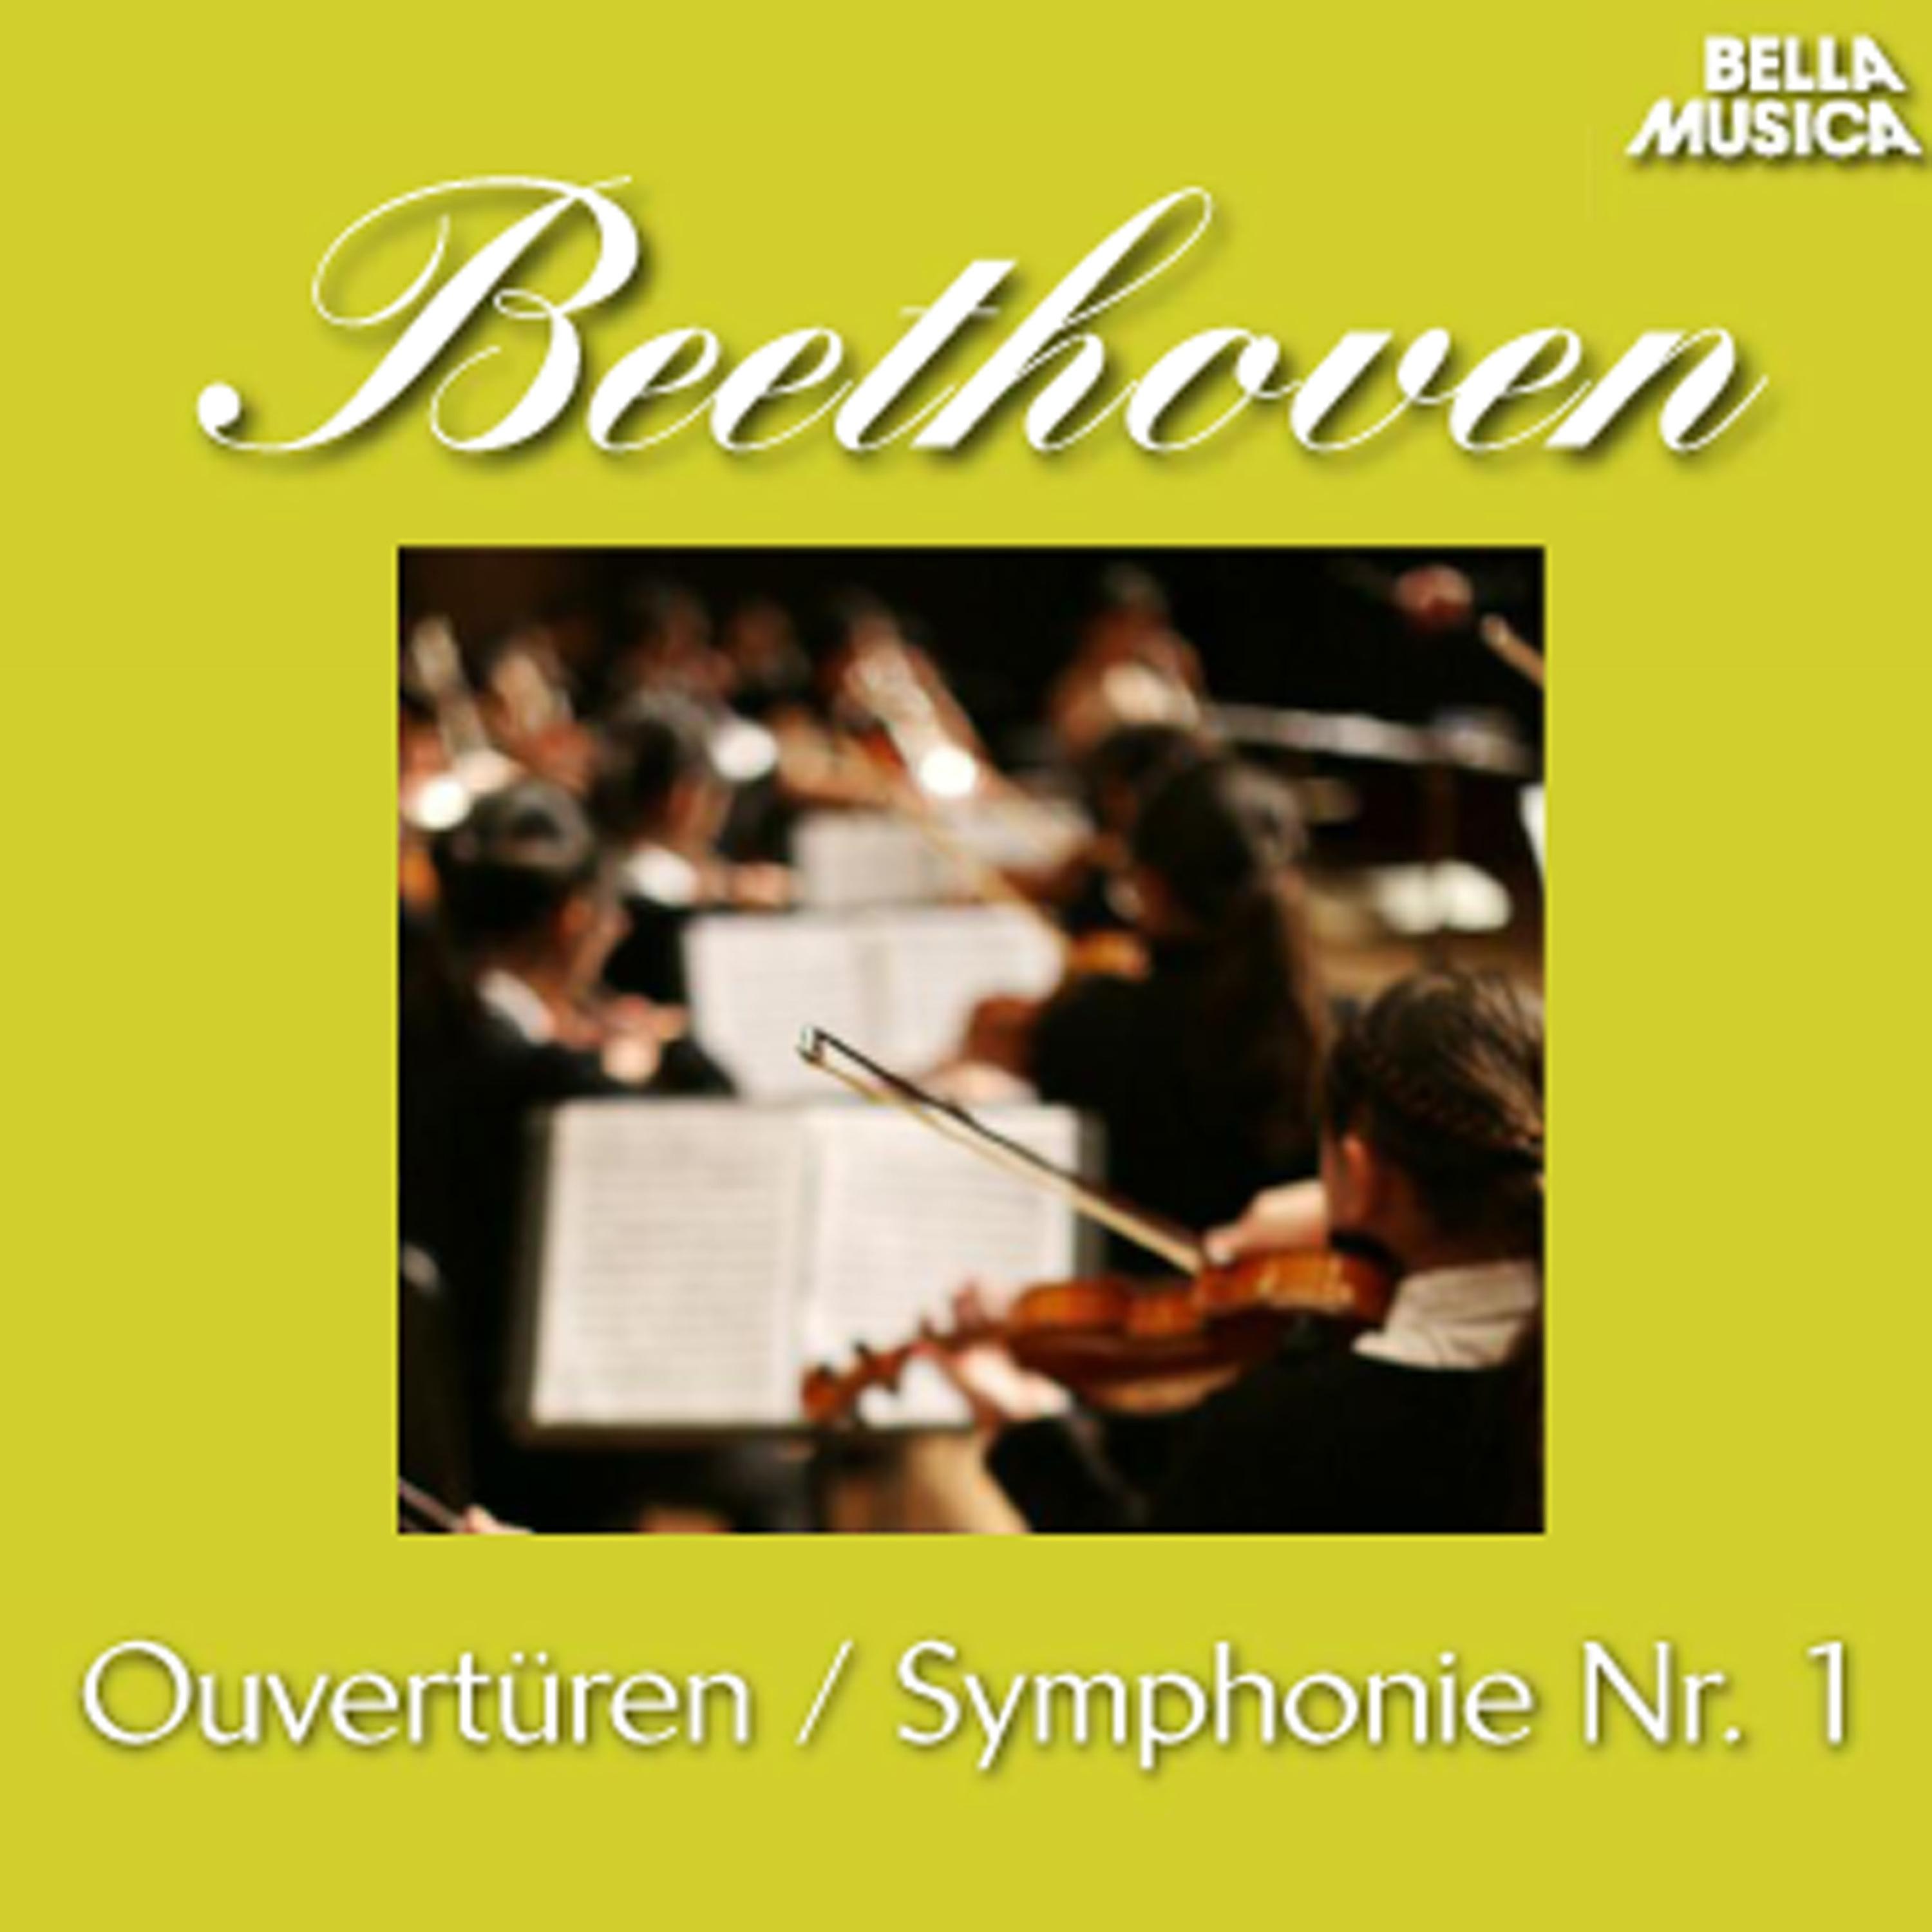 Sinfonie No. 1 fü r Orchester in C Major, Op. 21: III. Menuetto  Allegro molto e vivace